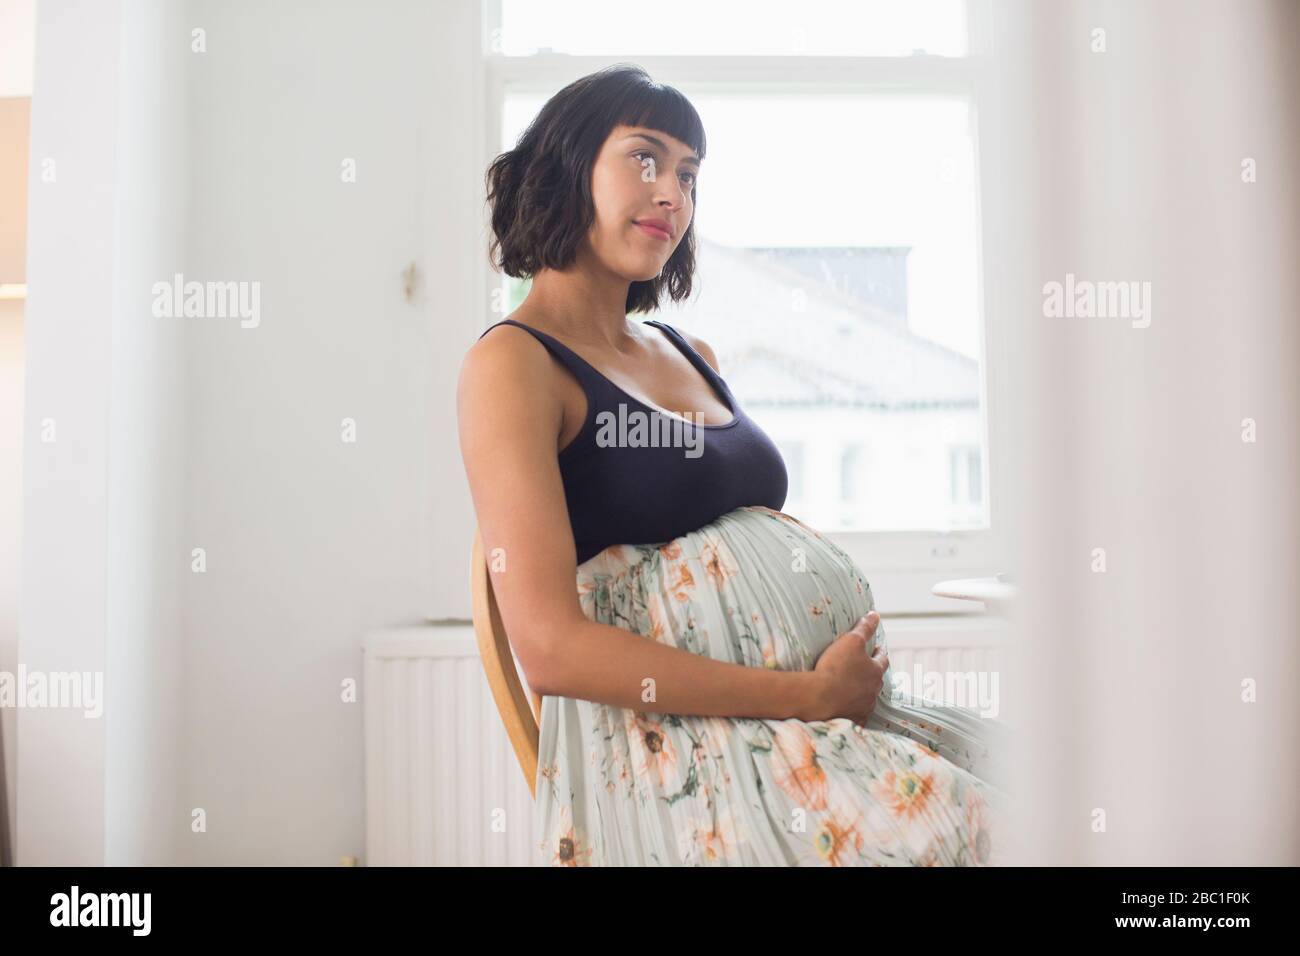 Nachdenkliche schwangere Frau, die Magen hält Stockfoto